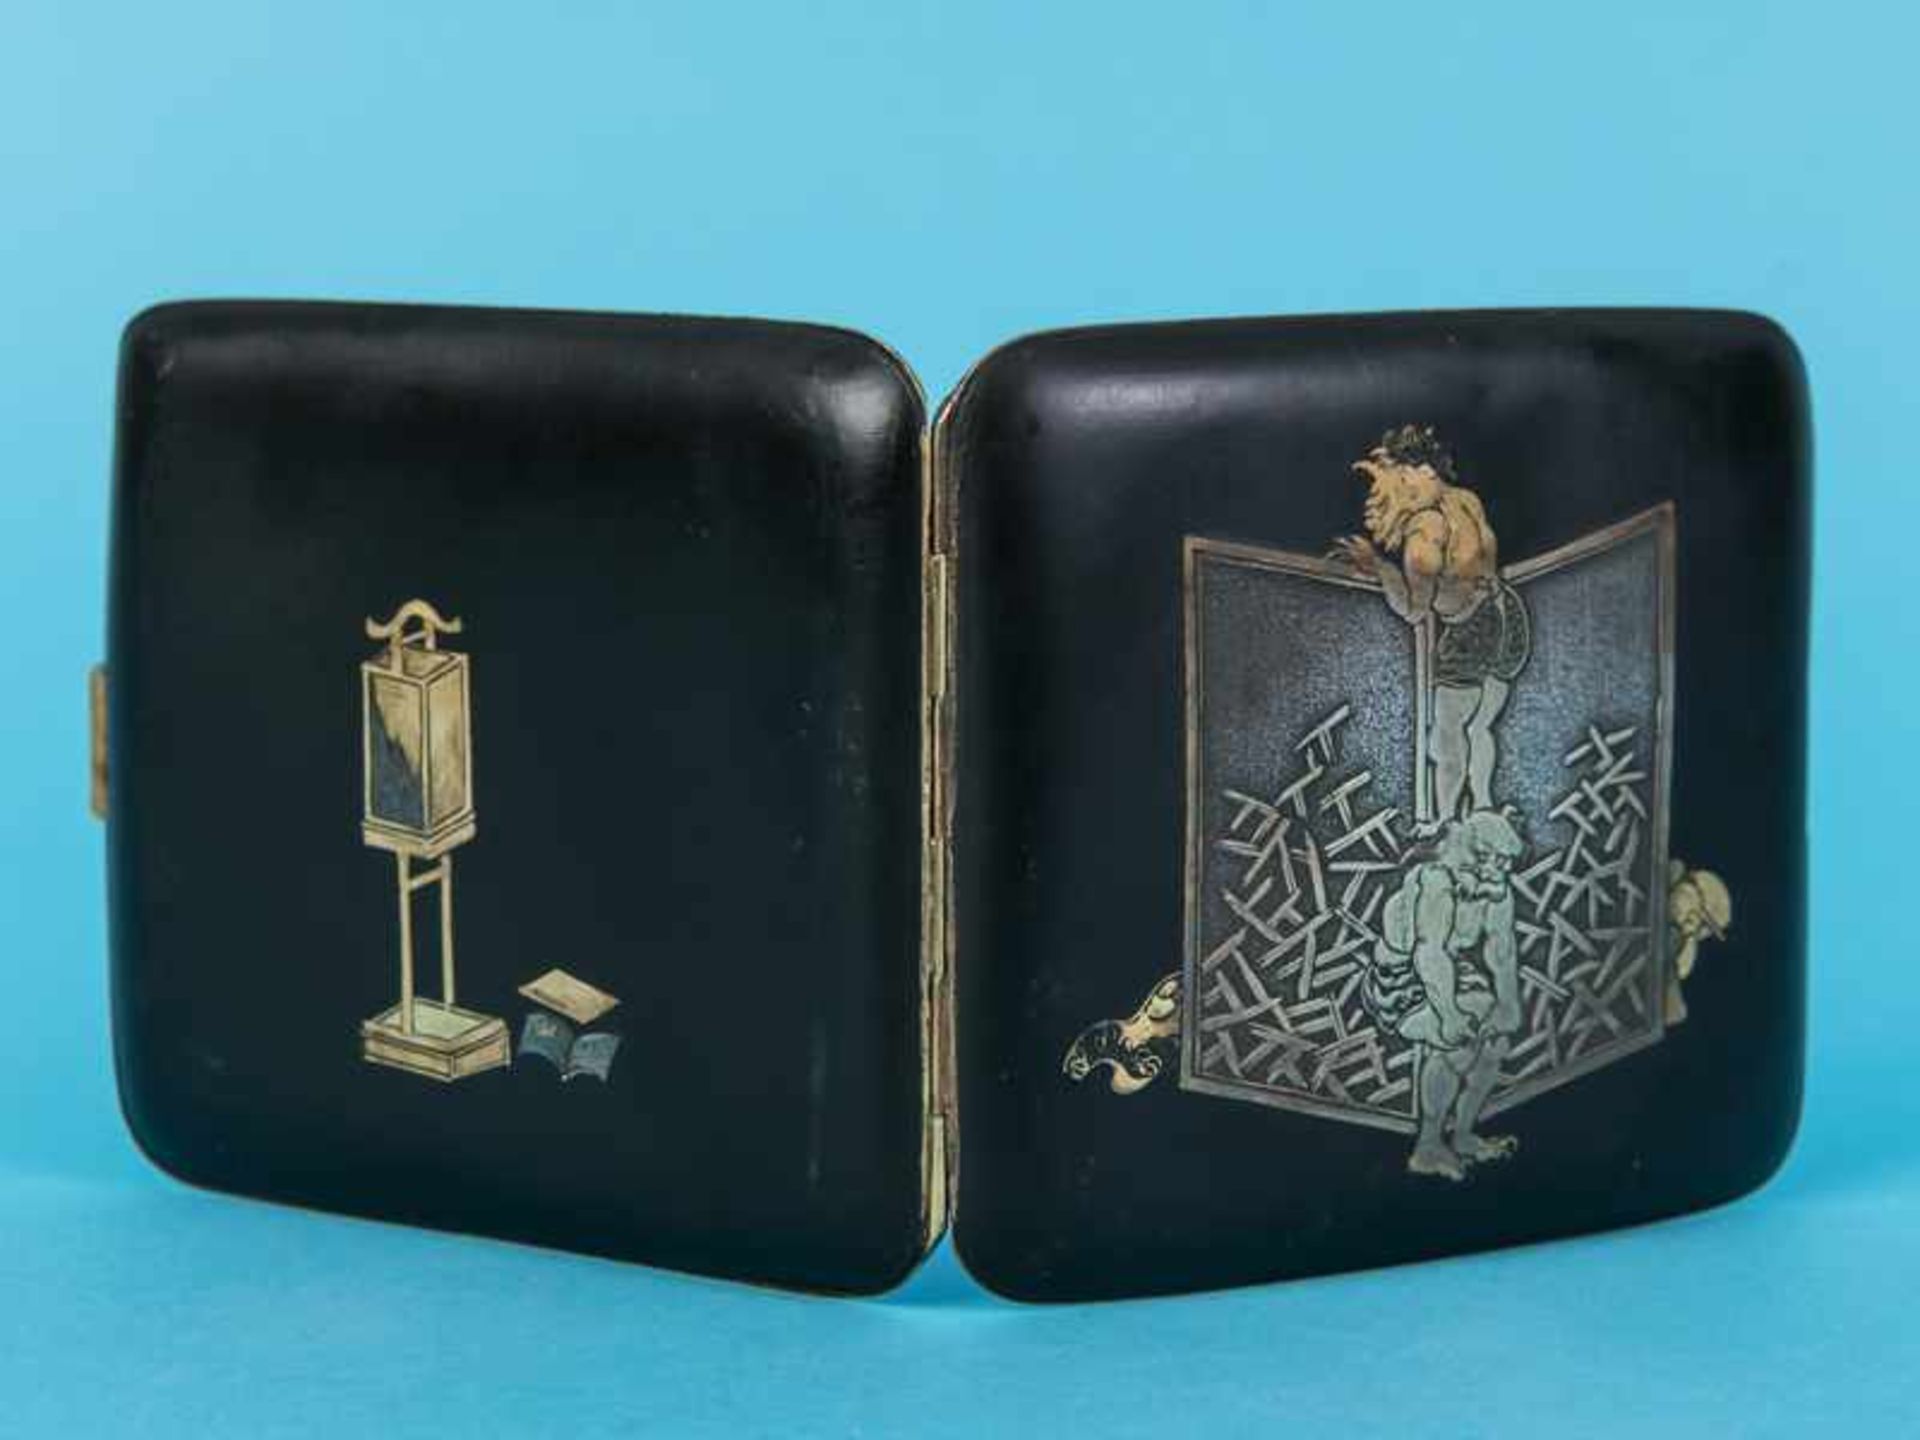 Zigaretten-Etui mit Erotica-Motiven, Japan, späte Meiji-Periode (um 1900). Eisen, Gold- und